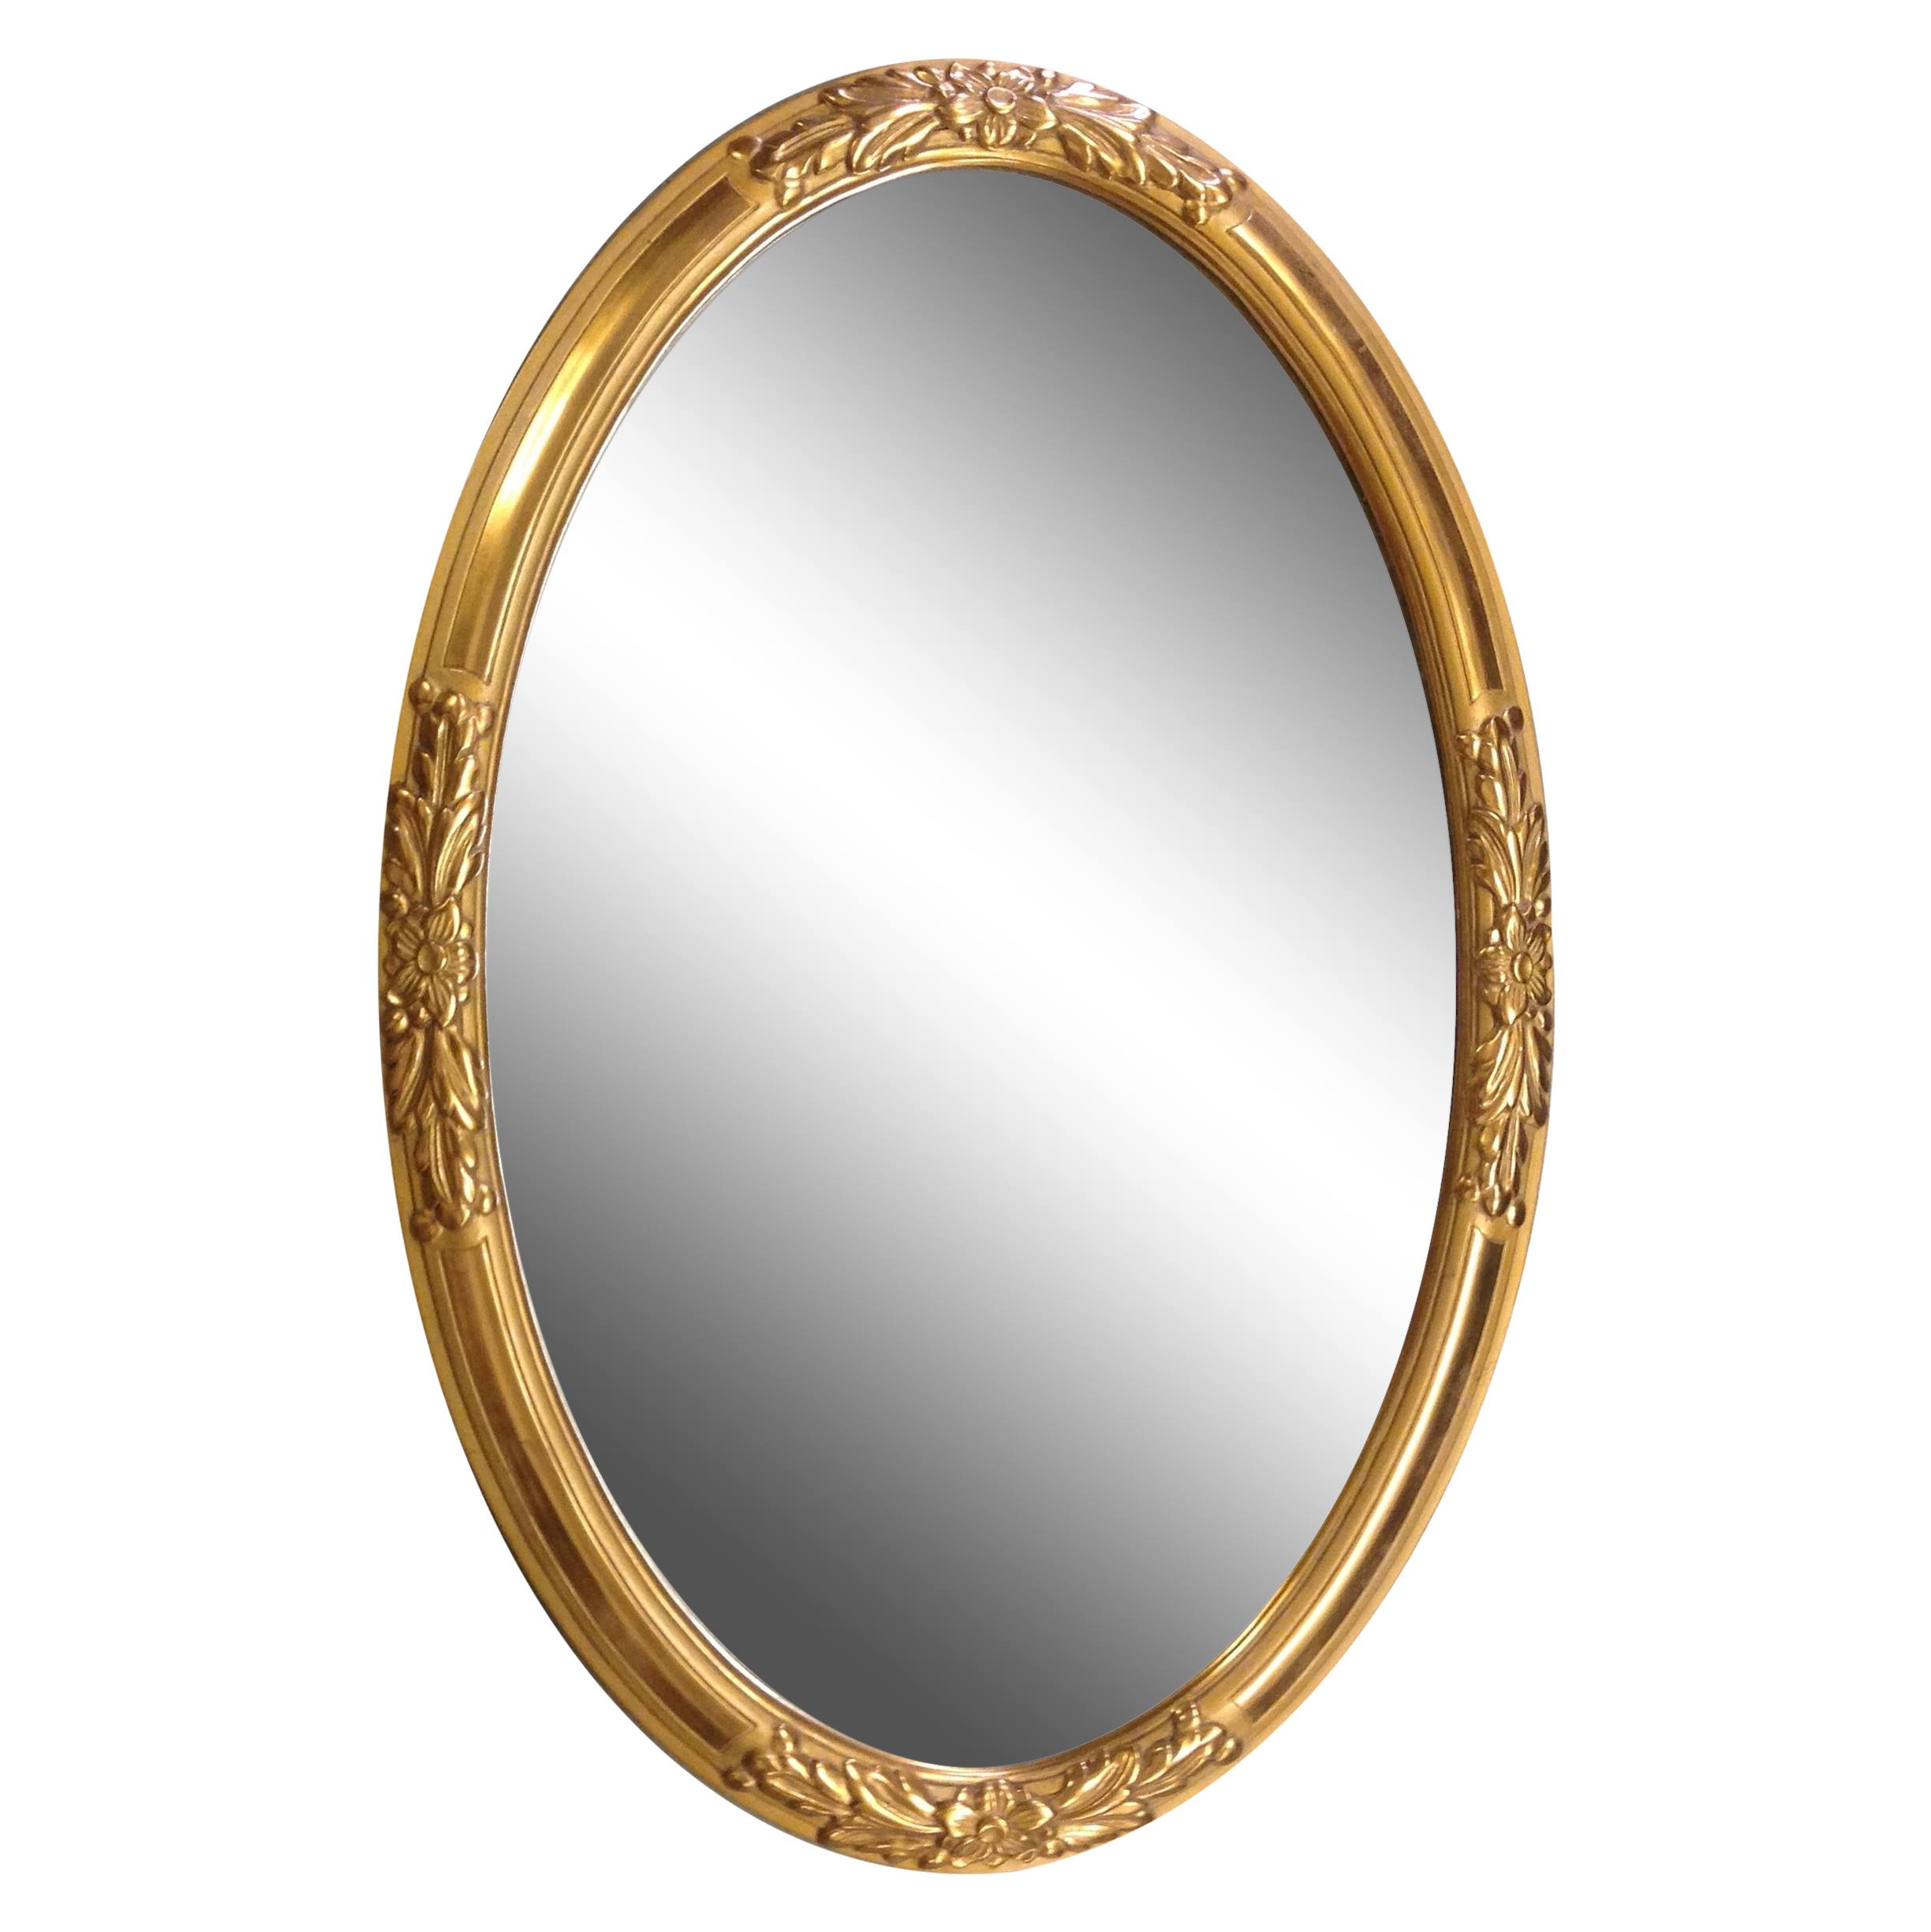 Bingkai cermin emas Gambar Transparan